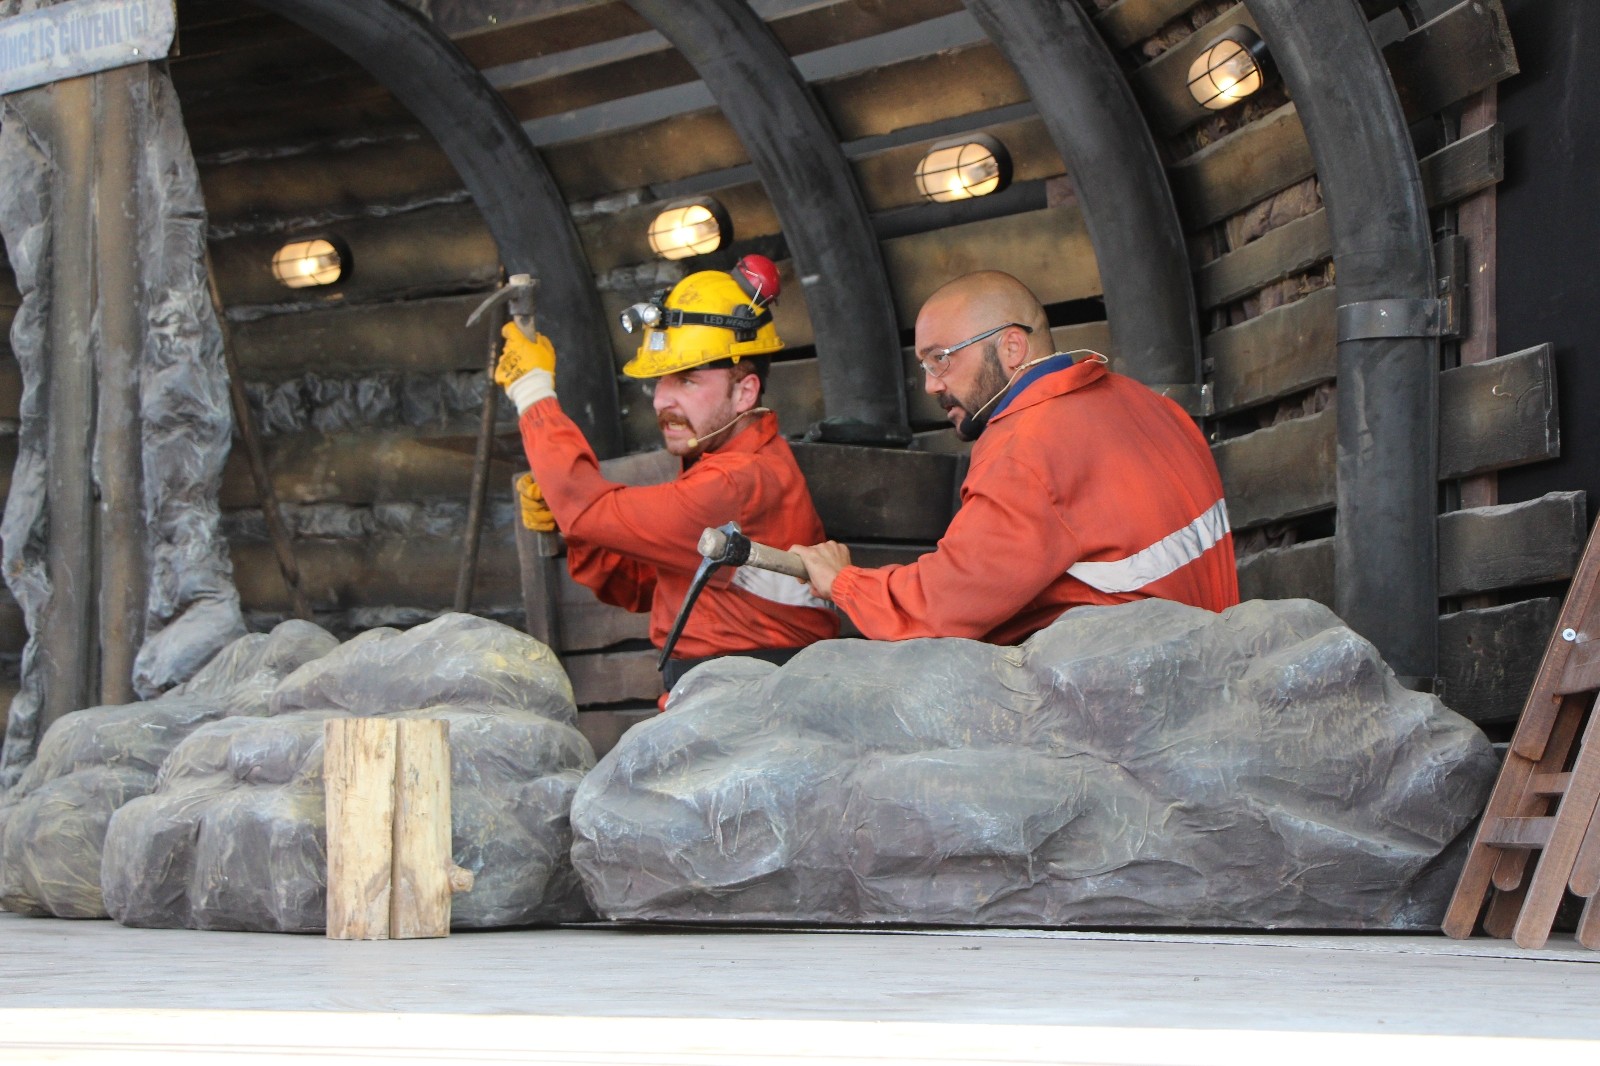 Bakanlıktan madenlerde iş güvenliği için interaktif tiyatro